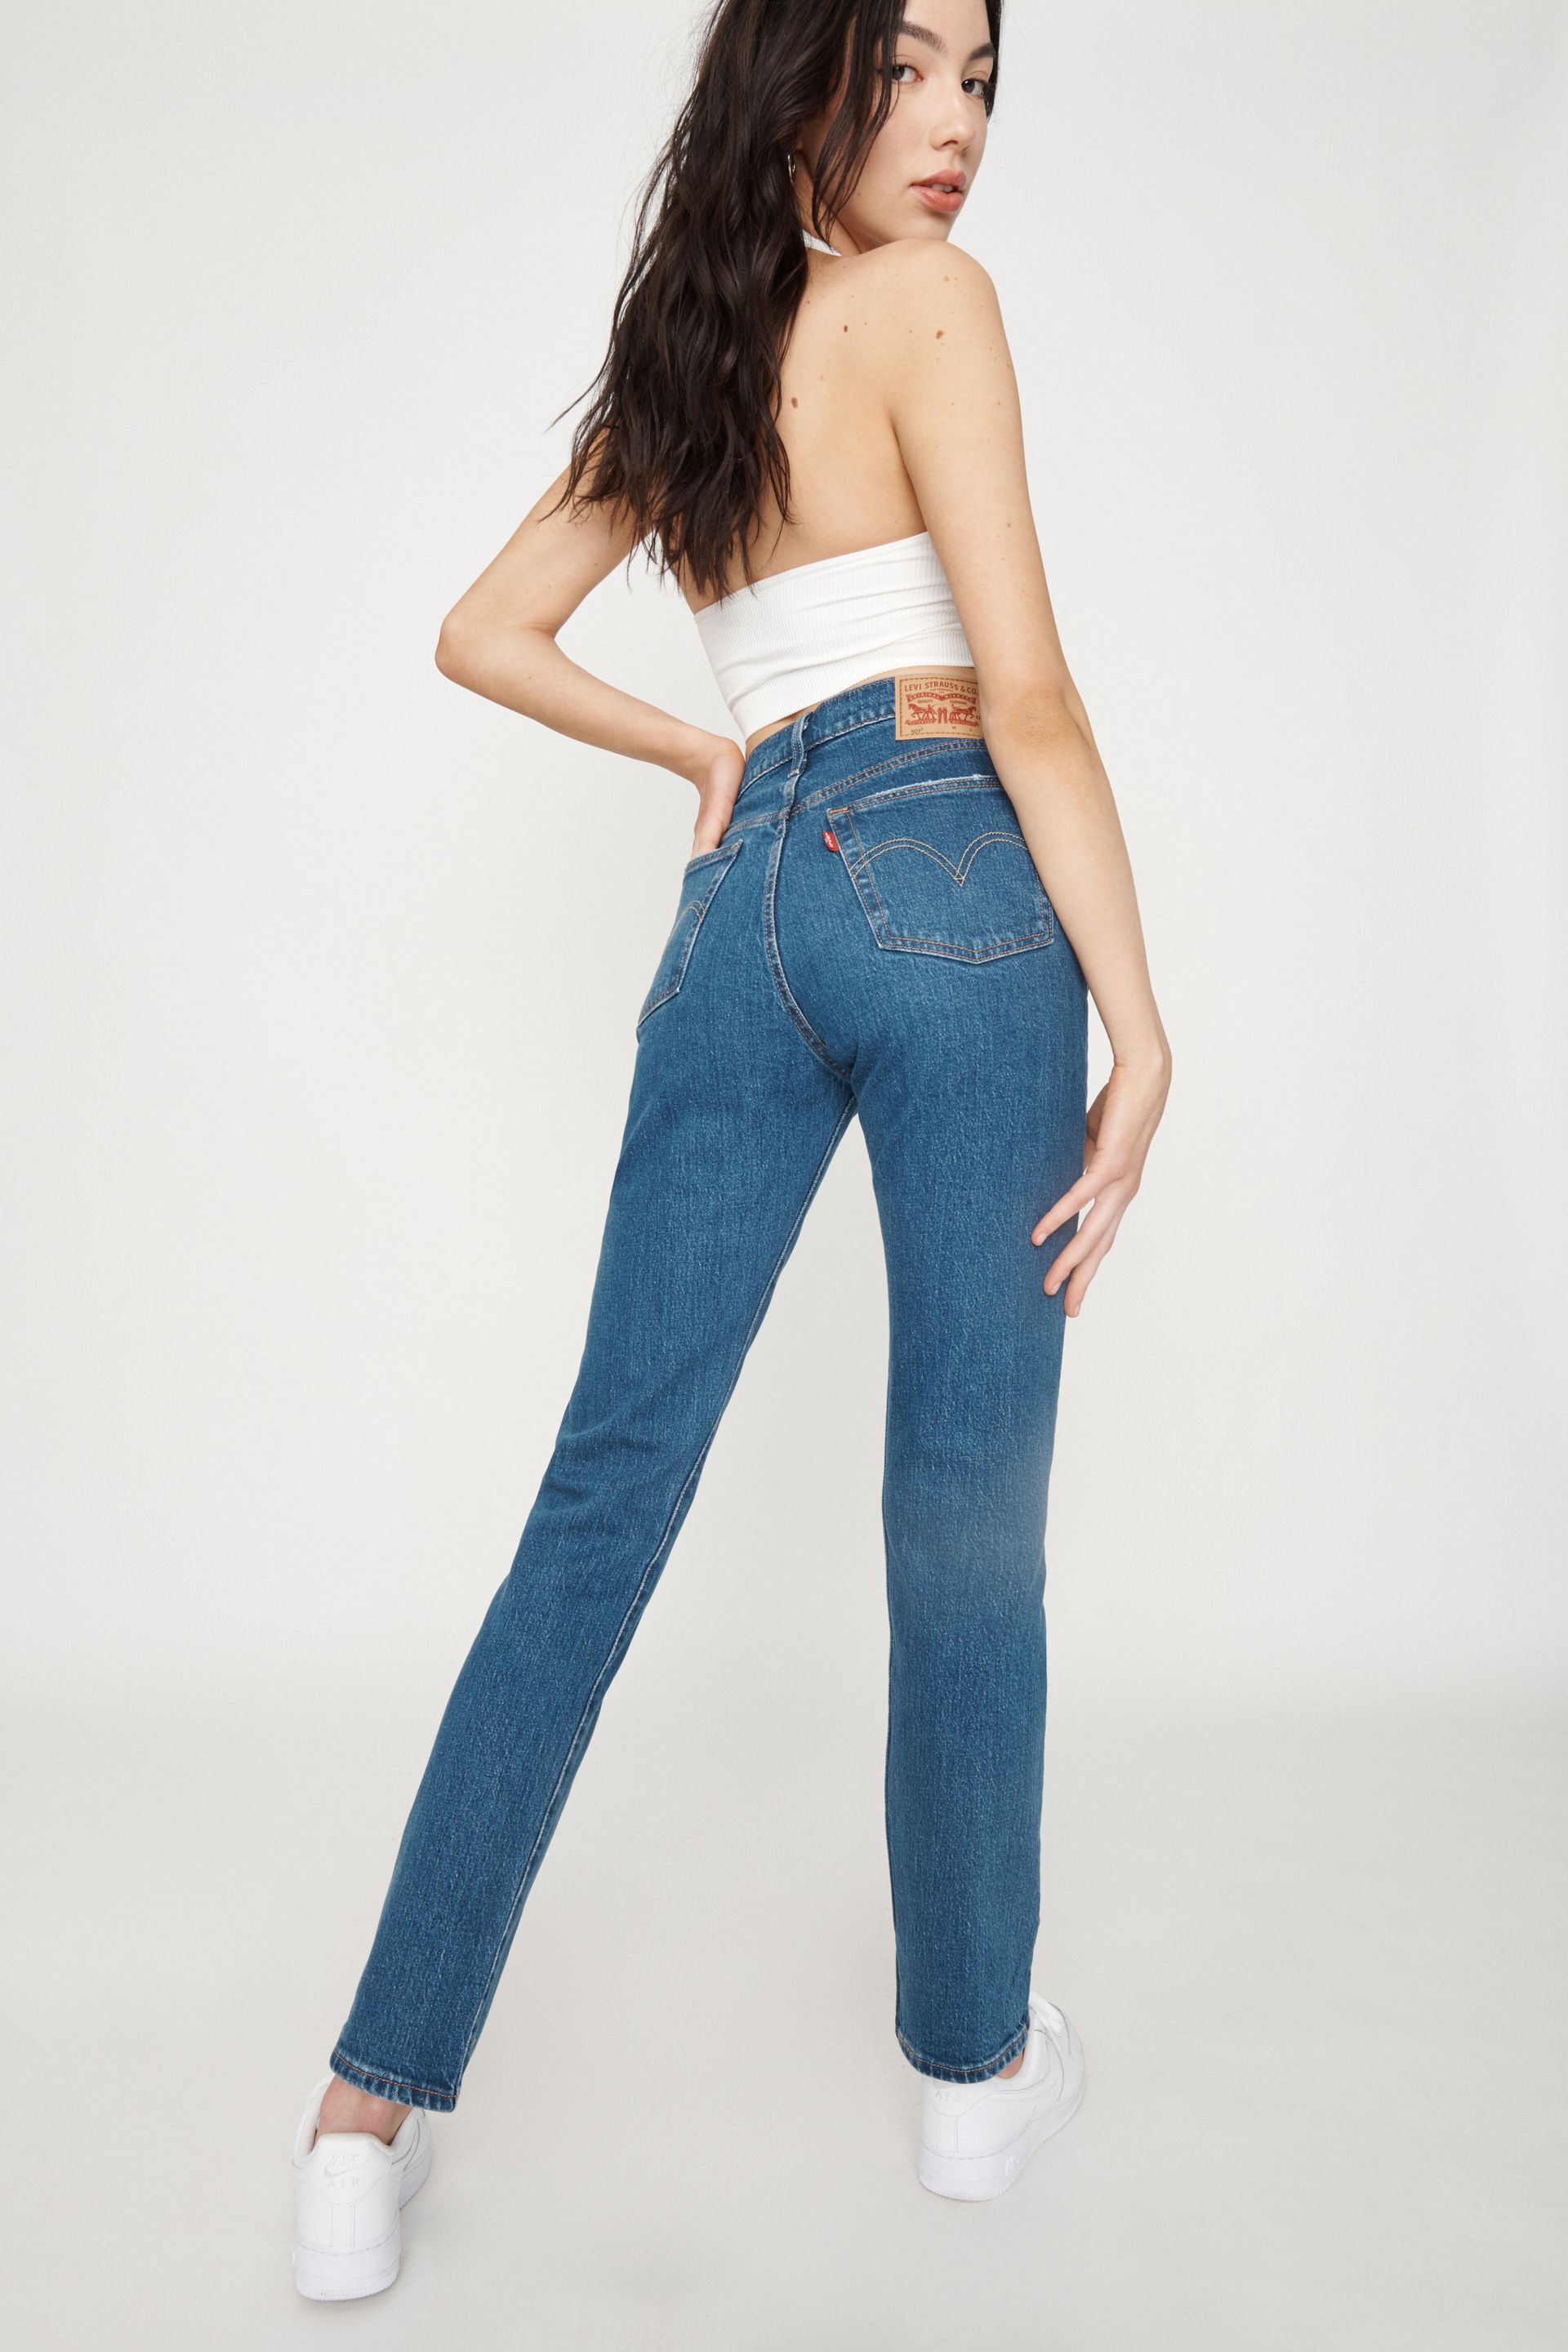 Levi's 501 Women's Jeans - Jeans